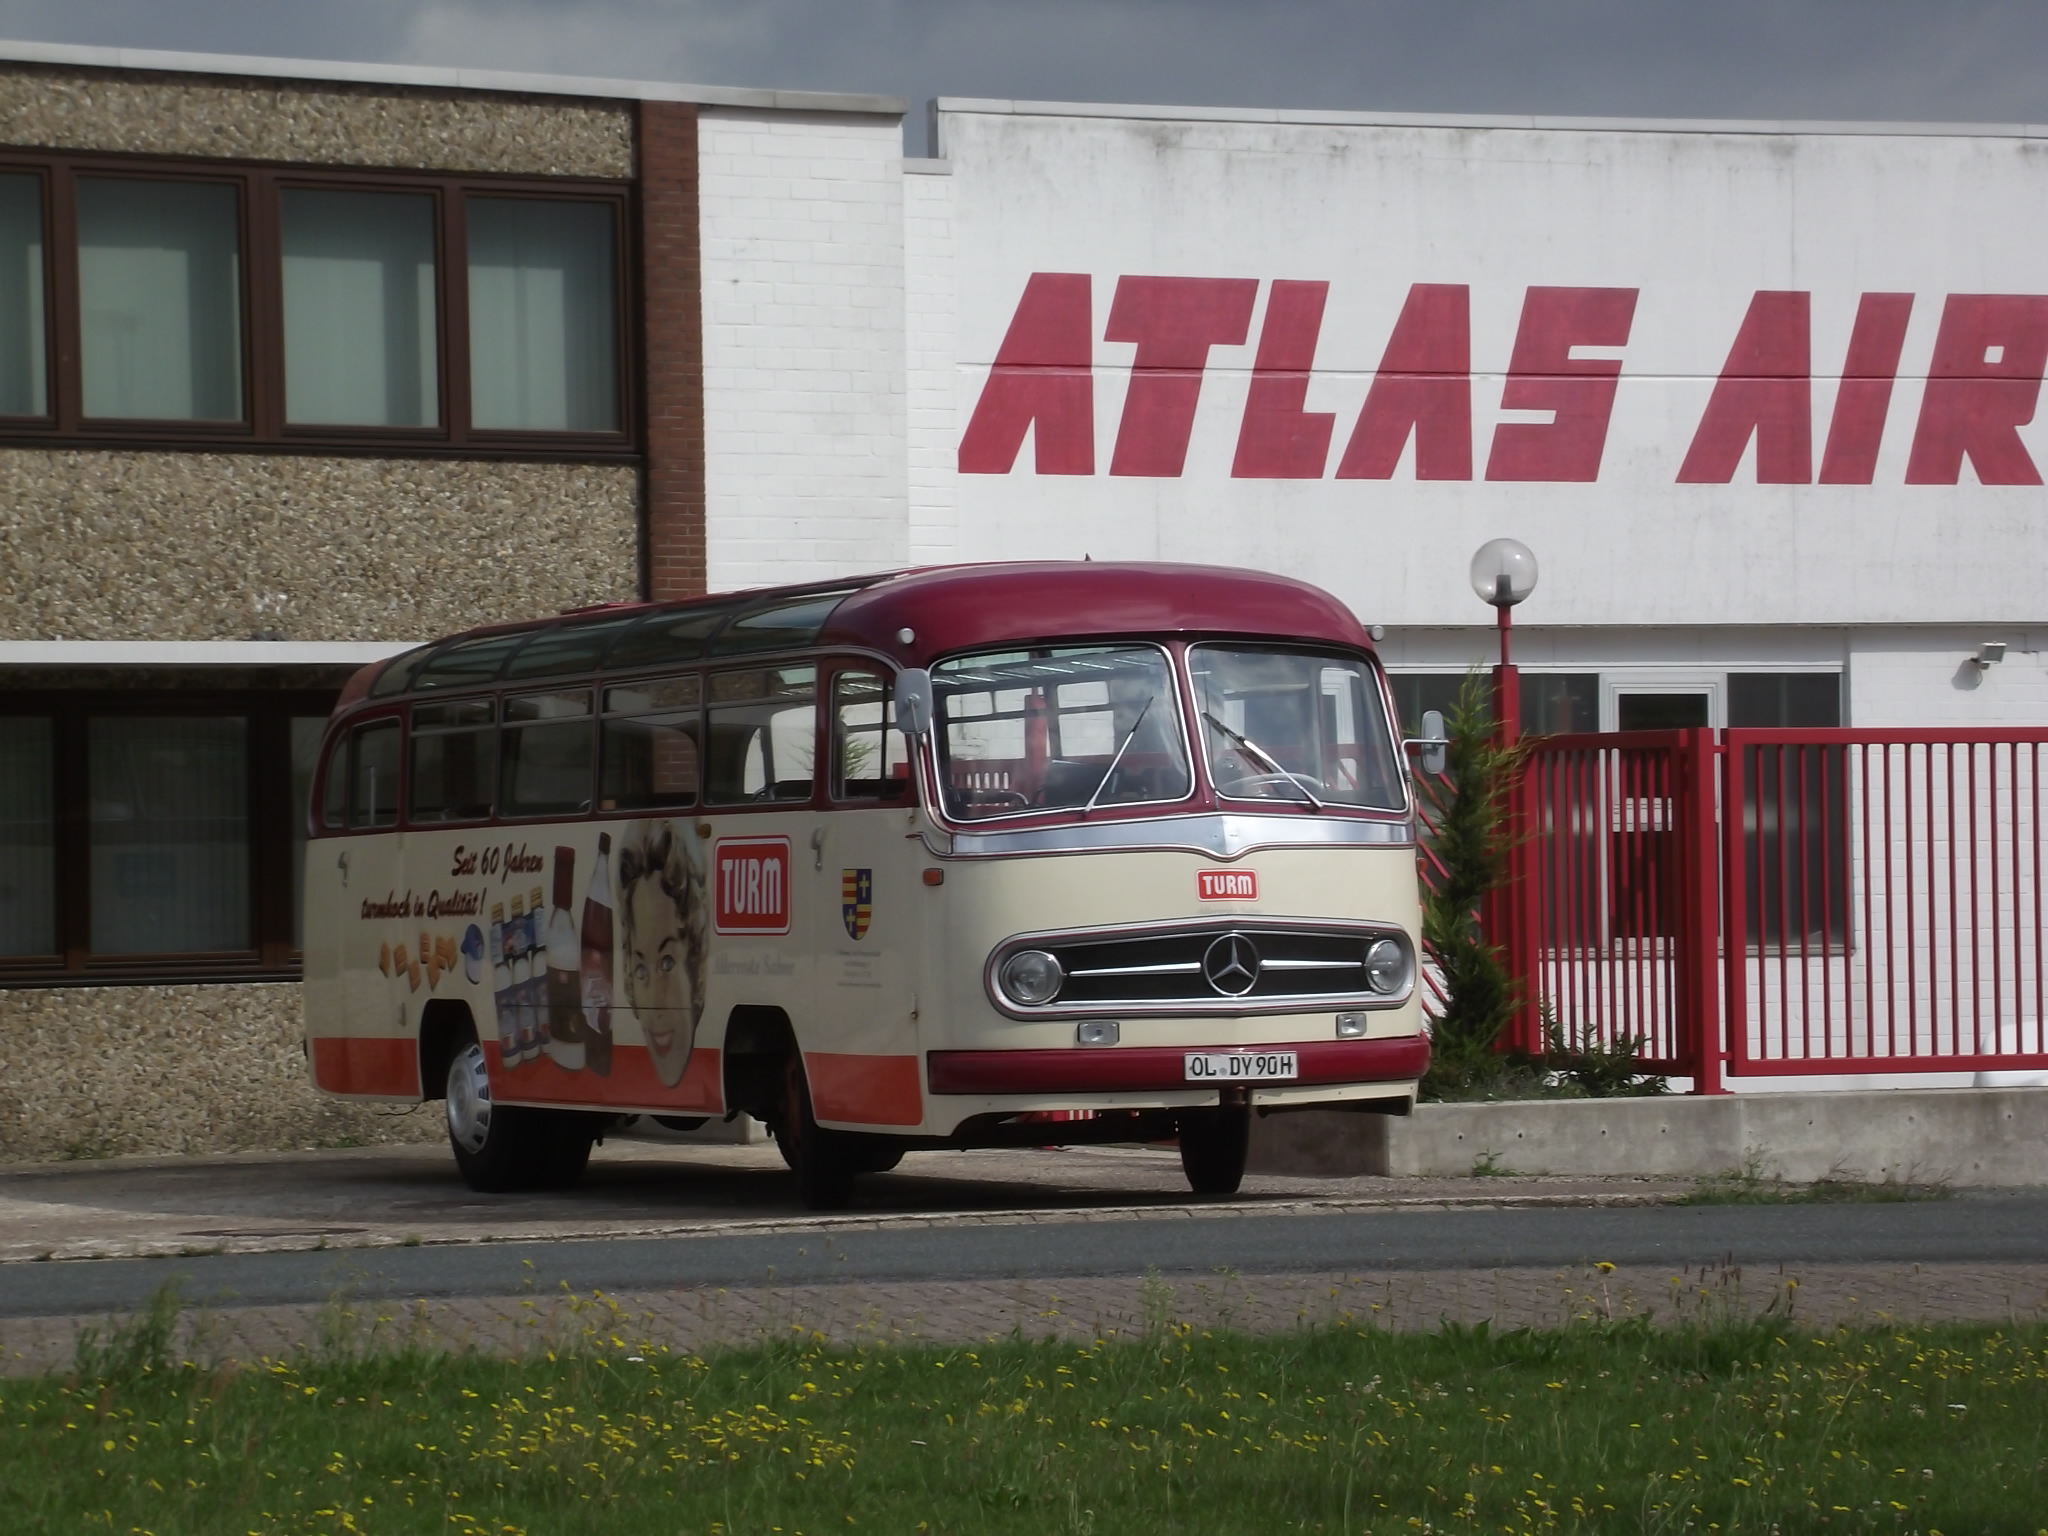 Atlas Air Service am Jet Flugtag in Ganderkesee - Bus Oldie vom Sponsor TURM Sahne aus Oldenburg